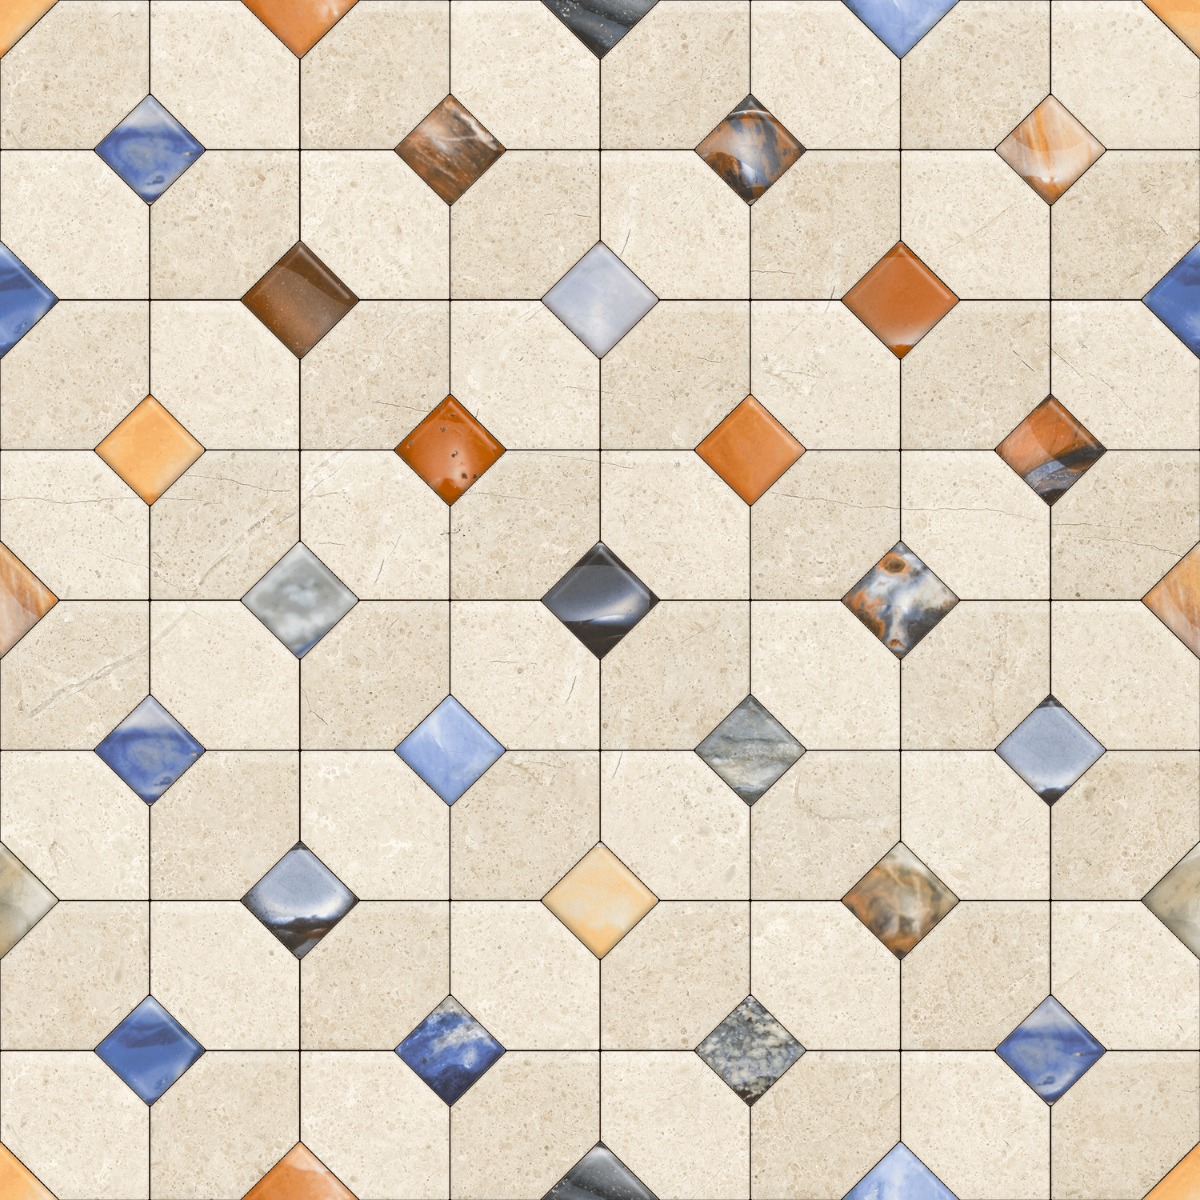 Anti Skid Tiles for Bathroom Tiles